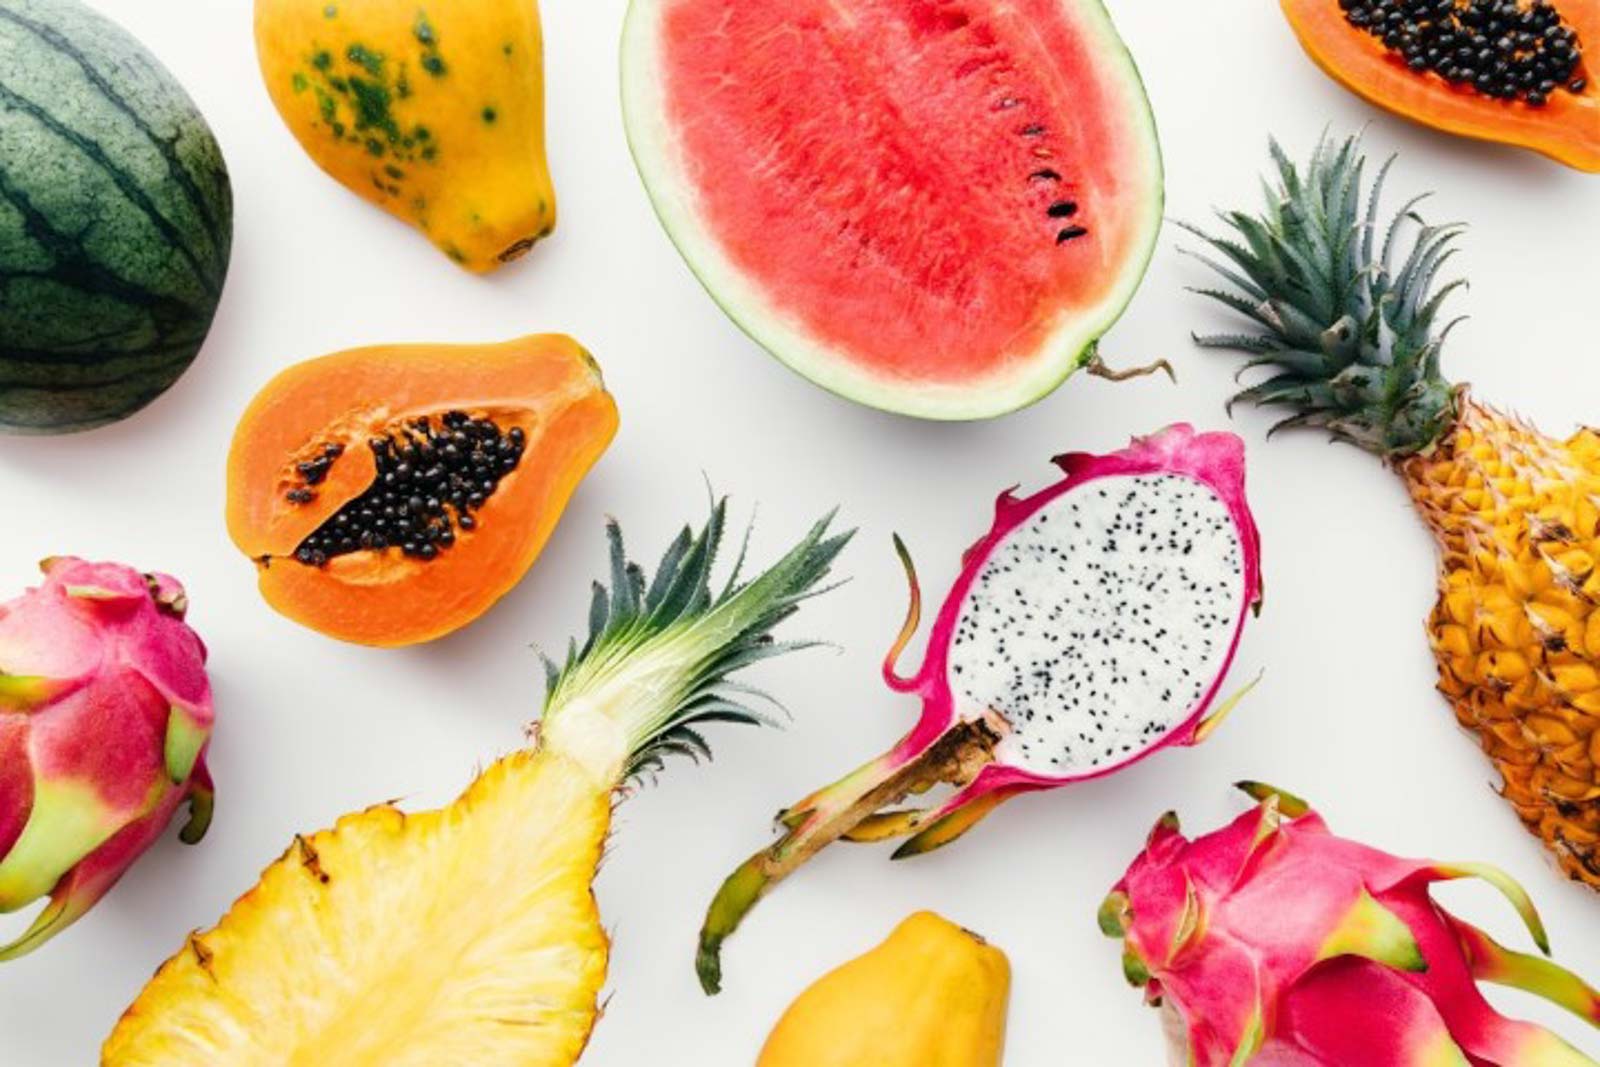 Exotische Früchte wie Papaya, Drachenfrucht, Mango, Ananas und Melone haben zu viele Zucker für die ketogene Diät